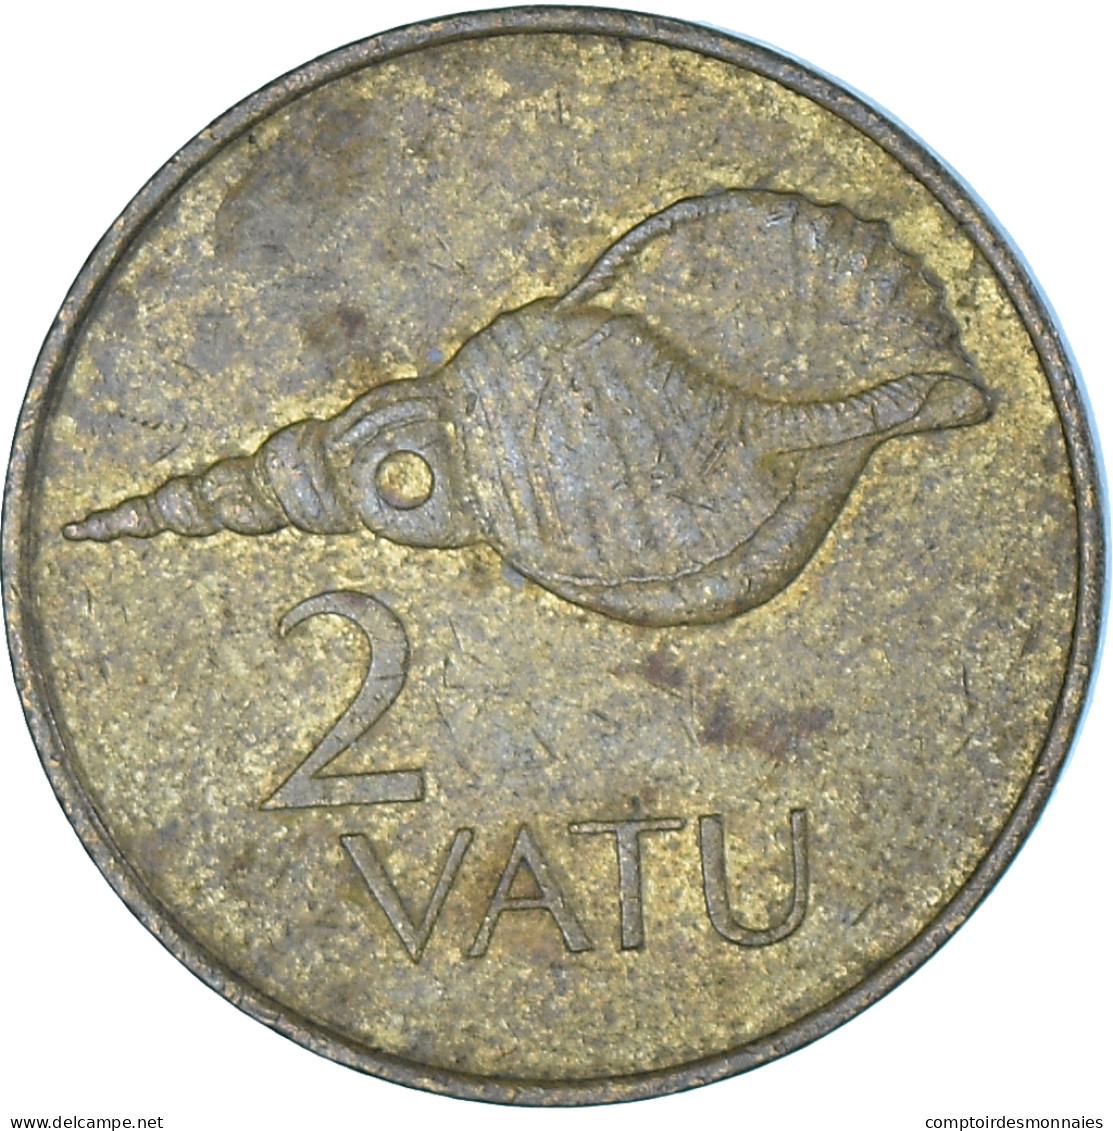 Monnaie, Vanuatu, 2 Vatu, 1983 - Vanuatu